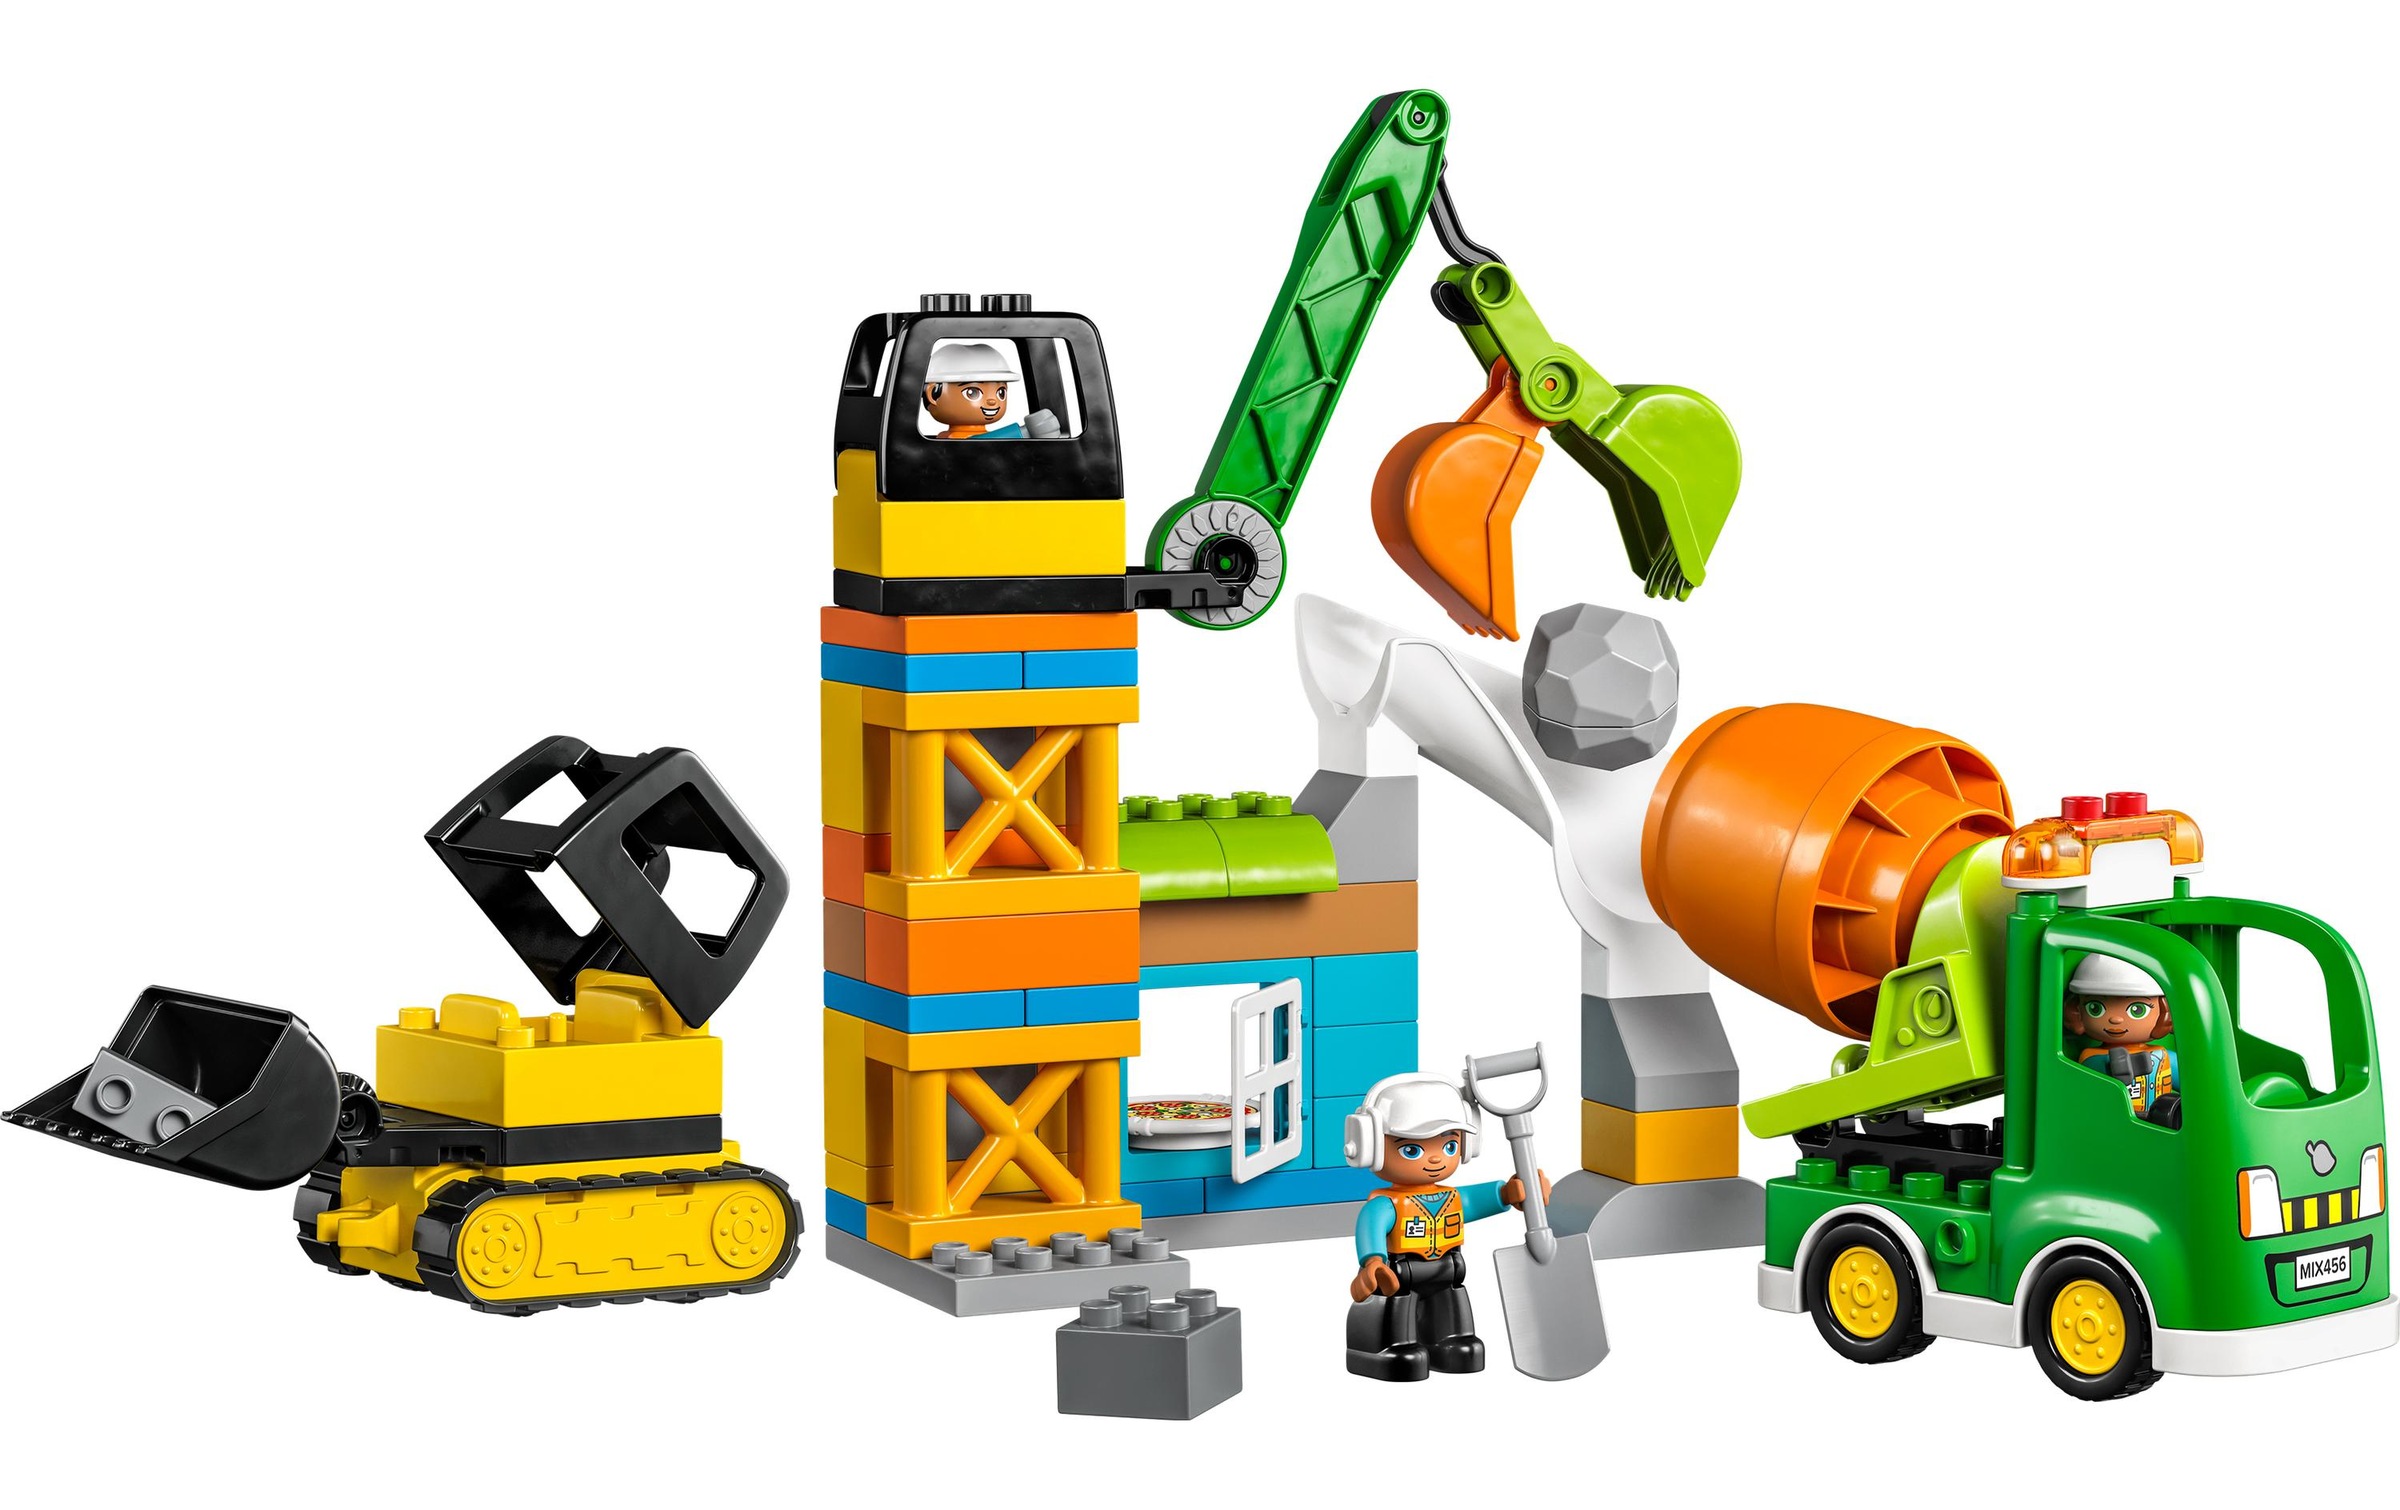 LEGO® Konstruktionsspielsteine »Baustelle mit Baufahrzeugen«, (61 St.)